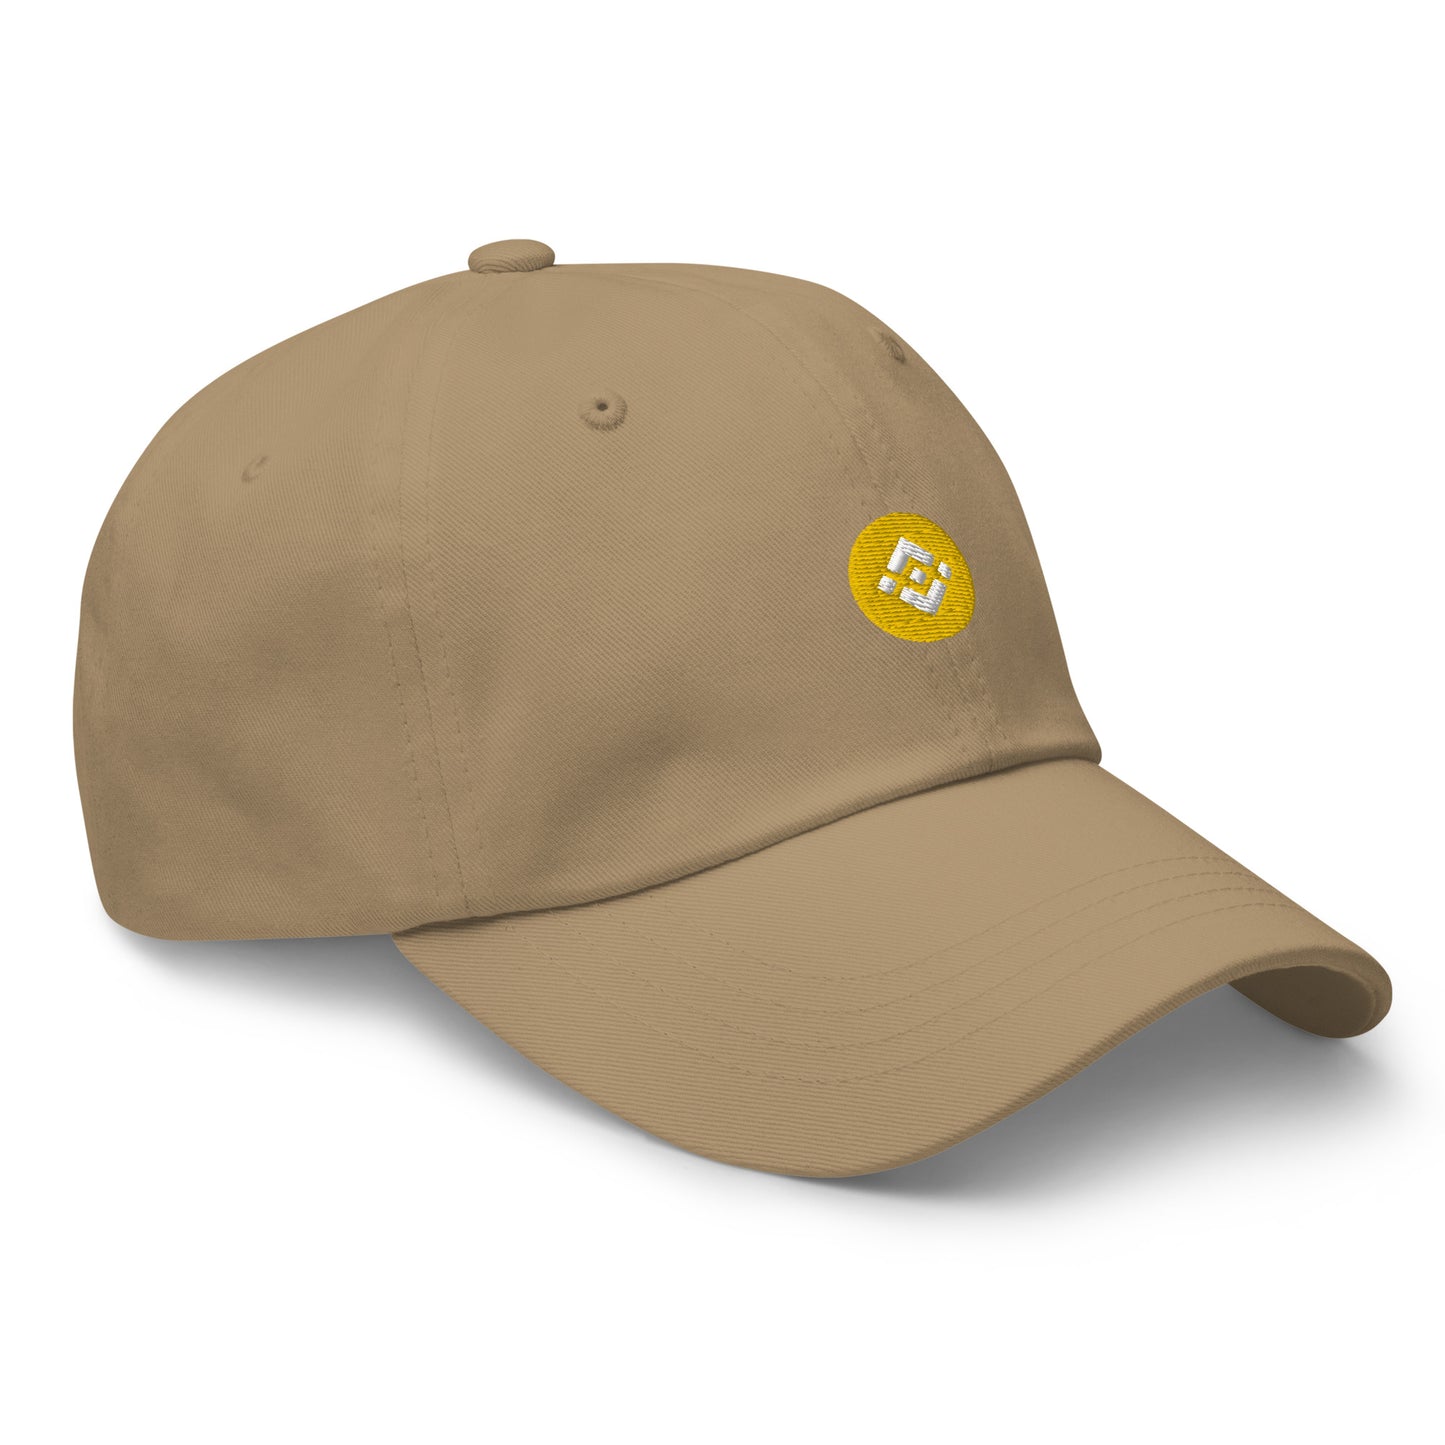 BINANCE (BNB) - Fitted baseball cap